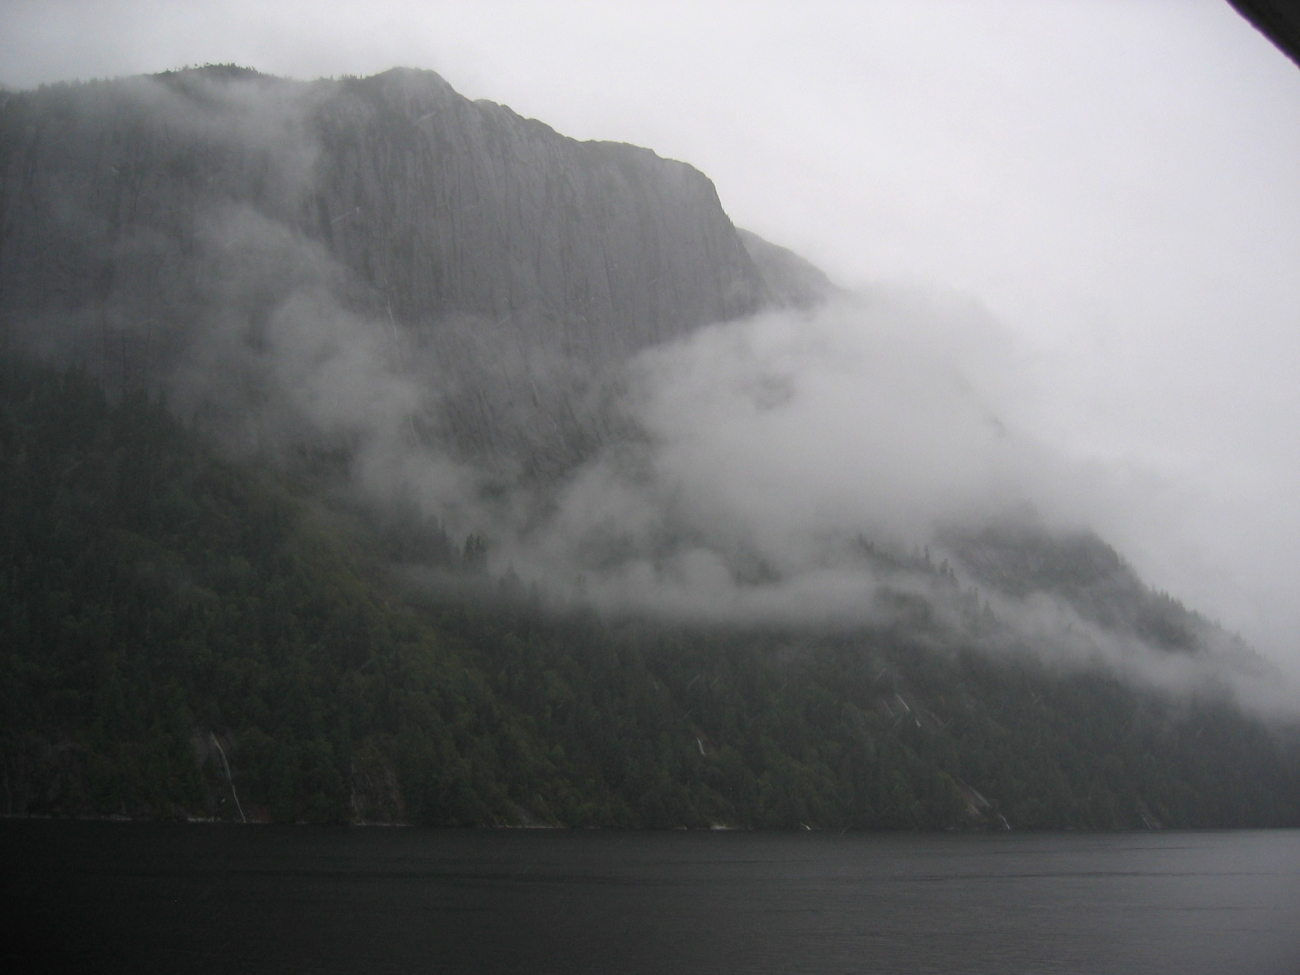 Precipitous cliffs, narrow waterways in the mist